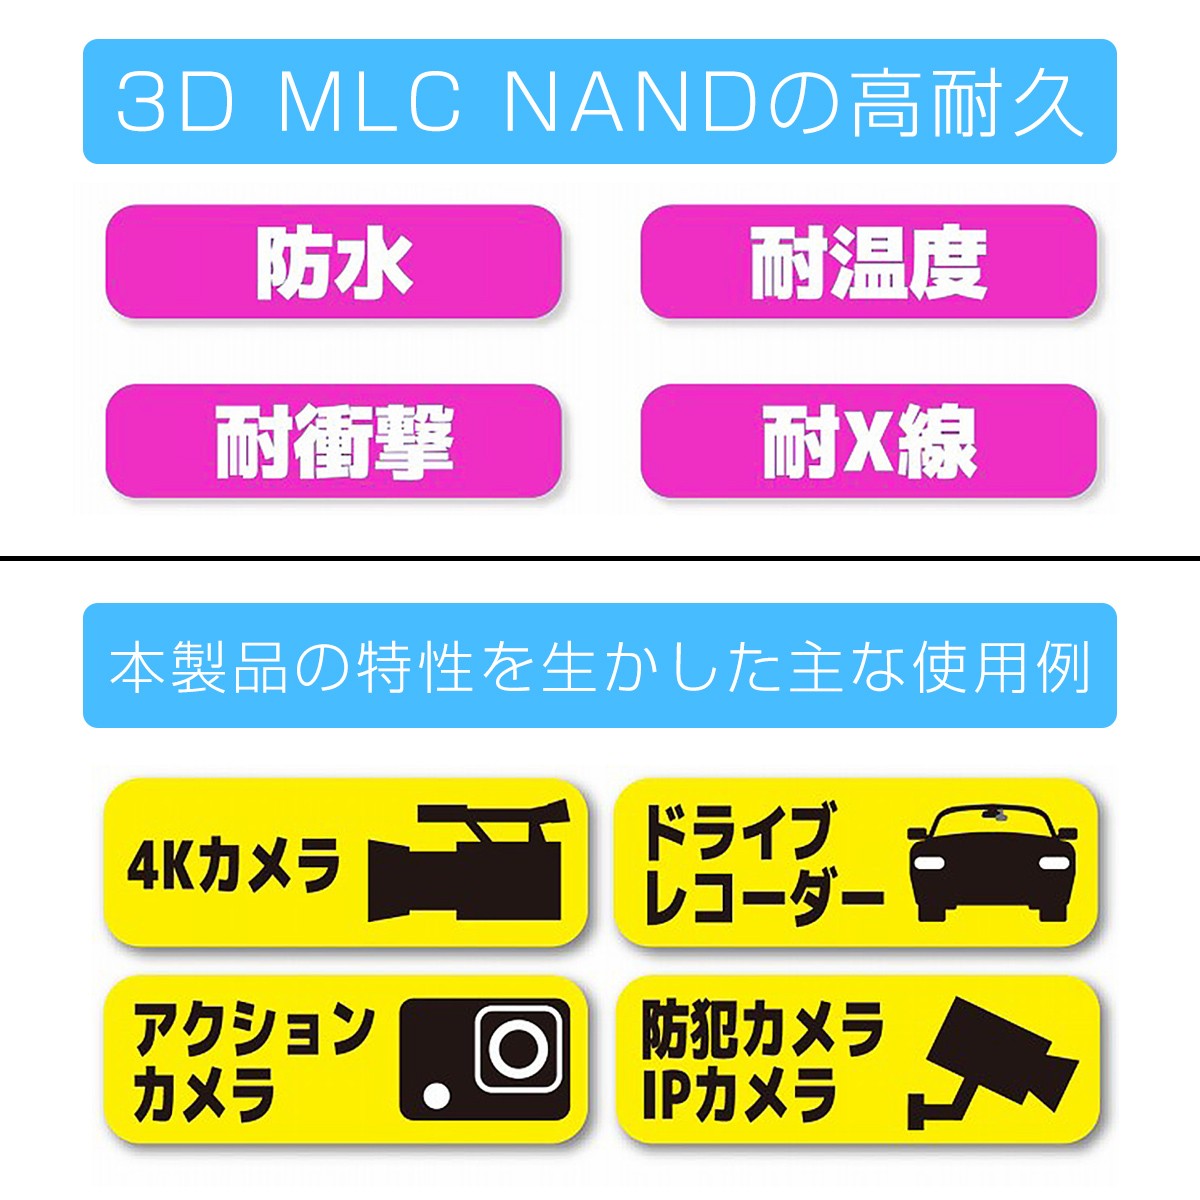 MicroSDカード 128GB UHS-I V30 超高速最大90MB/sec 3D MLC NAND採用 ASチップ microSDXC 300x  SDカード変換アダプタ USBカードリーダー付き 6ヶ月保証